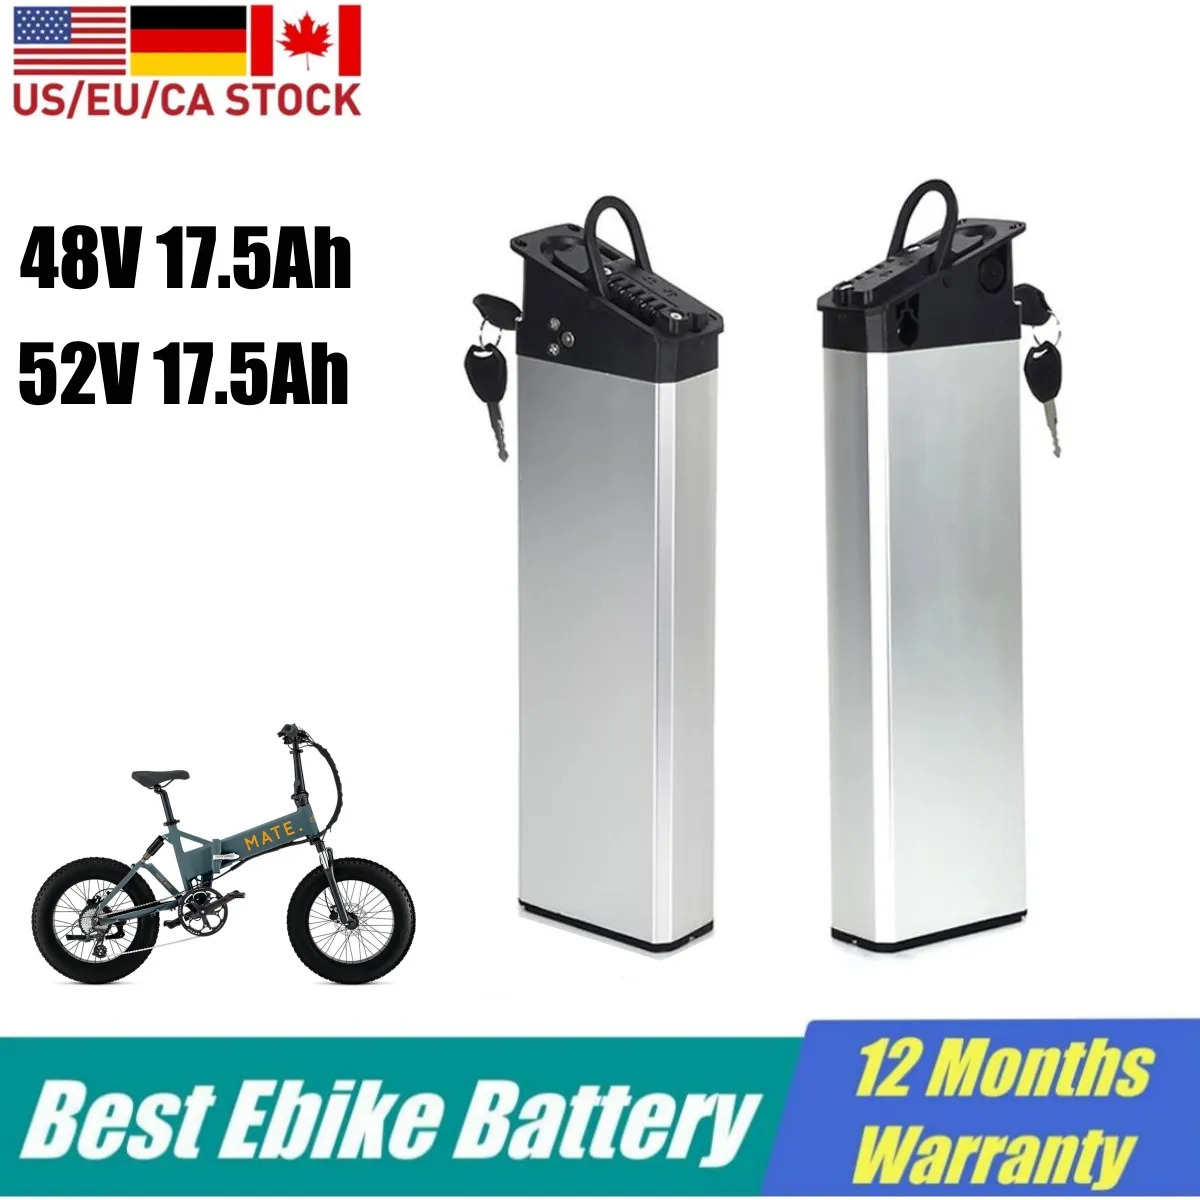 メイトx E自転車バッテリー48V 17.5AHエビケルインチューブバッテリーパック52V 17.5AMP 14AH用CMACEWHEEL RX20 LANKELEISI X3000PLUS 750W折りたたみ電気脂肪自転車